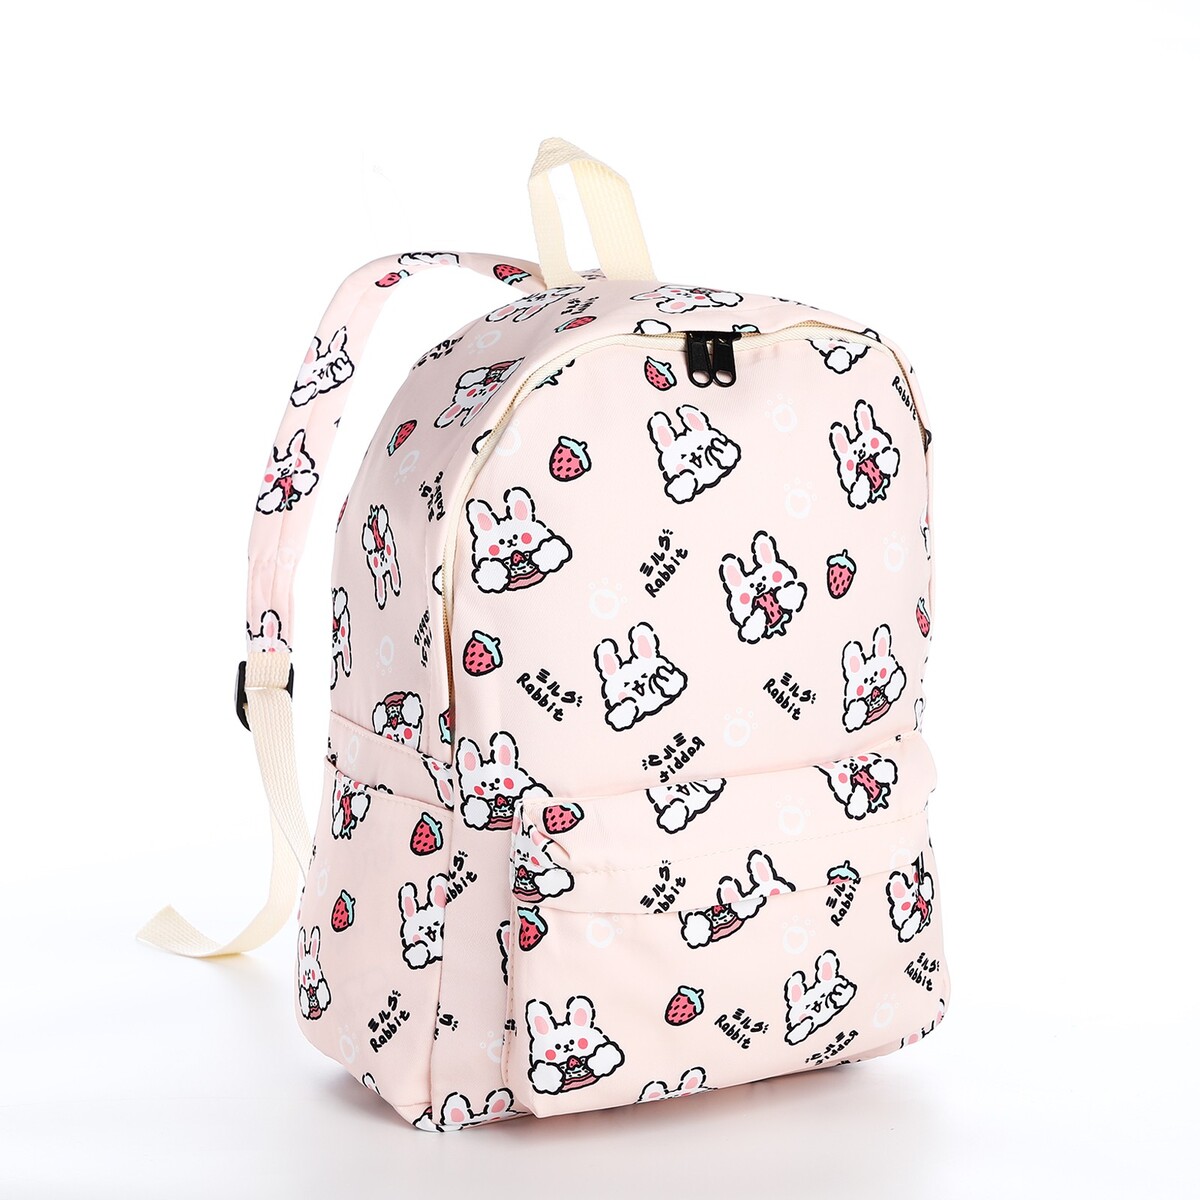 Рюкзак школьный из текстиля на молнии, 3 кармана, цвет бежевый/розовый рюкзак молодежный из текстиля 3 кармана белый бежевый